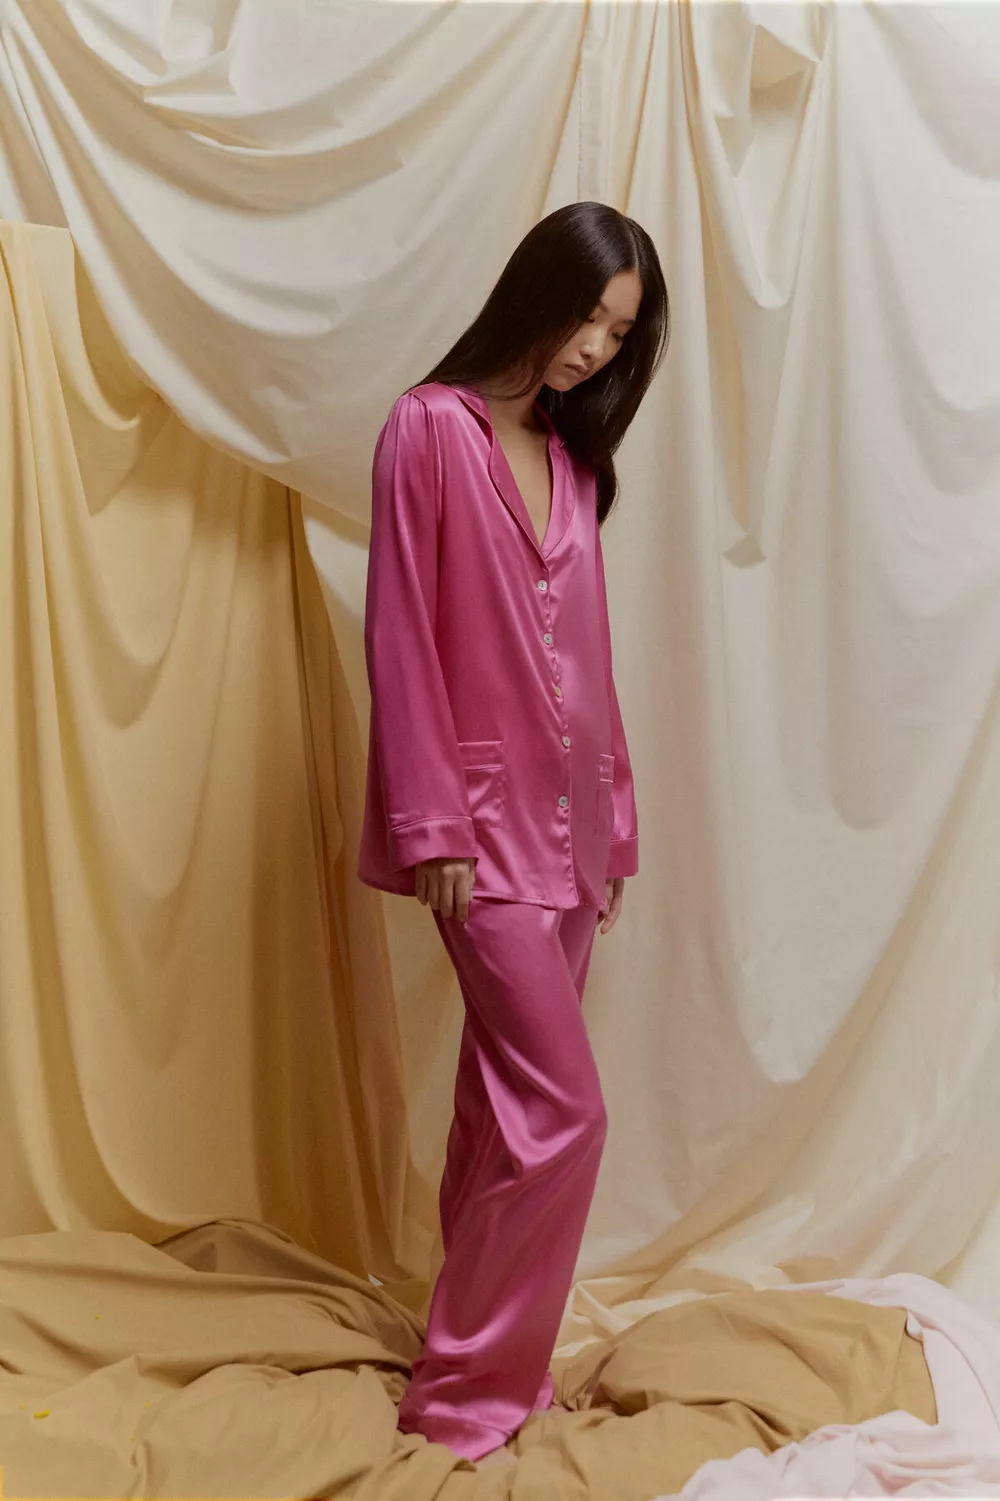 Цветные сны: бренд PRIMROSE представил новую коллекцию шелковых пижам